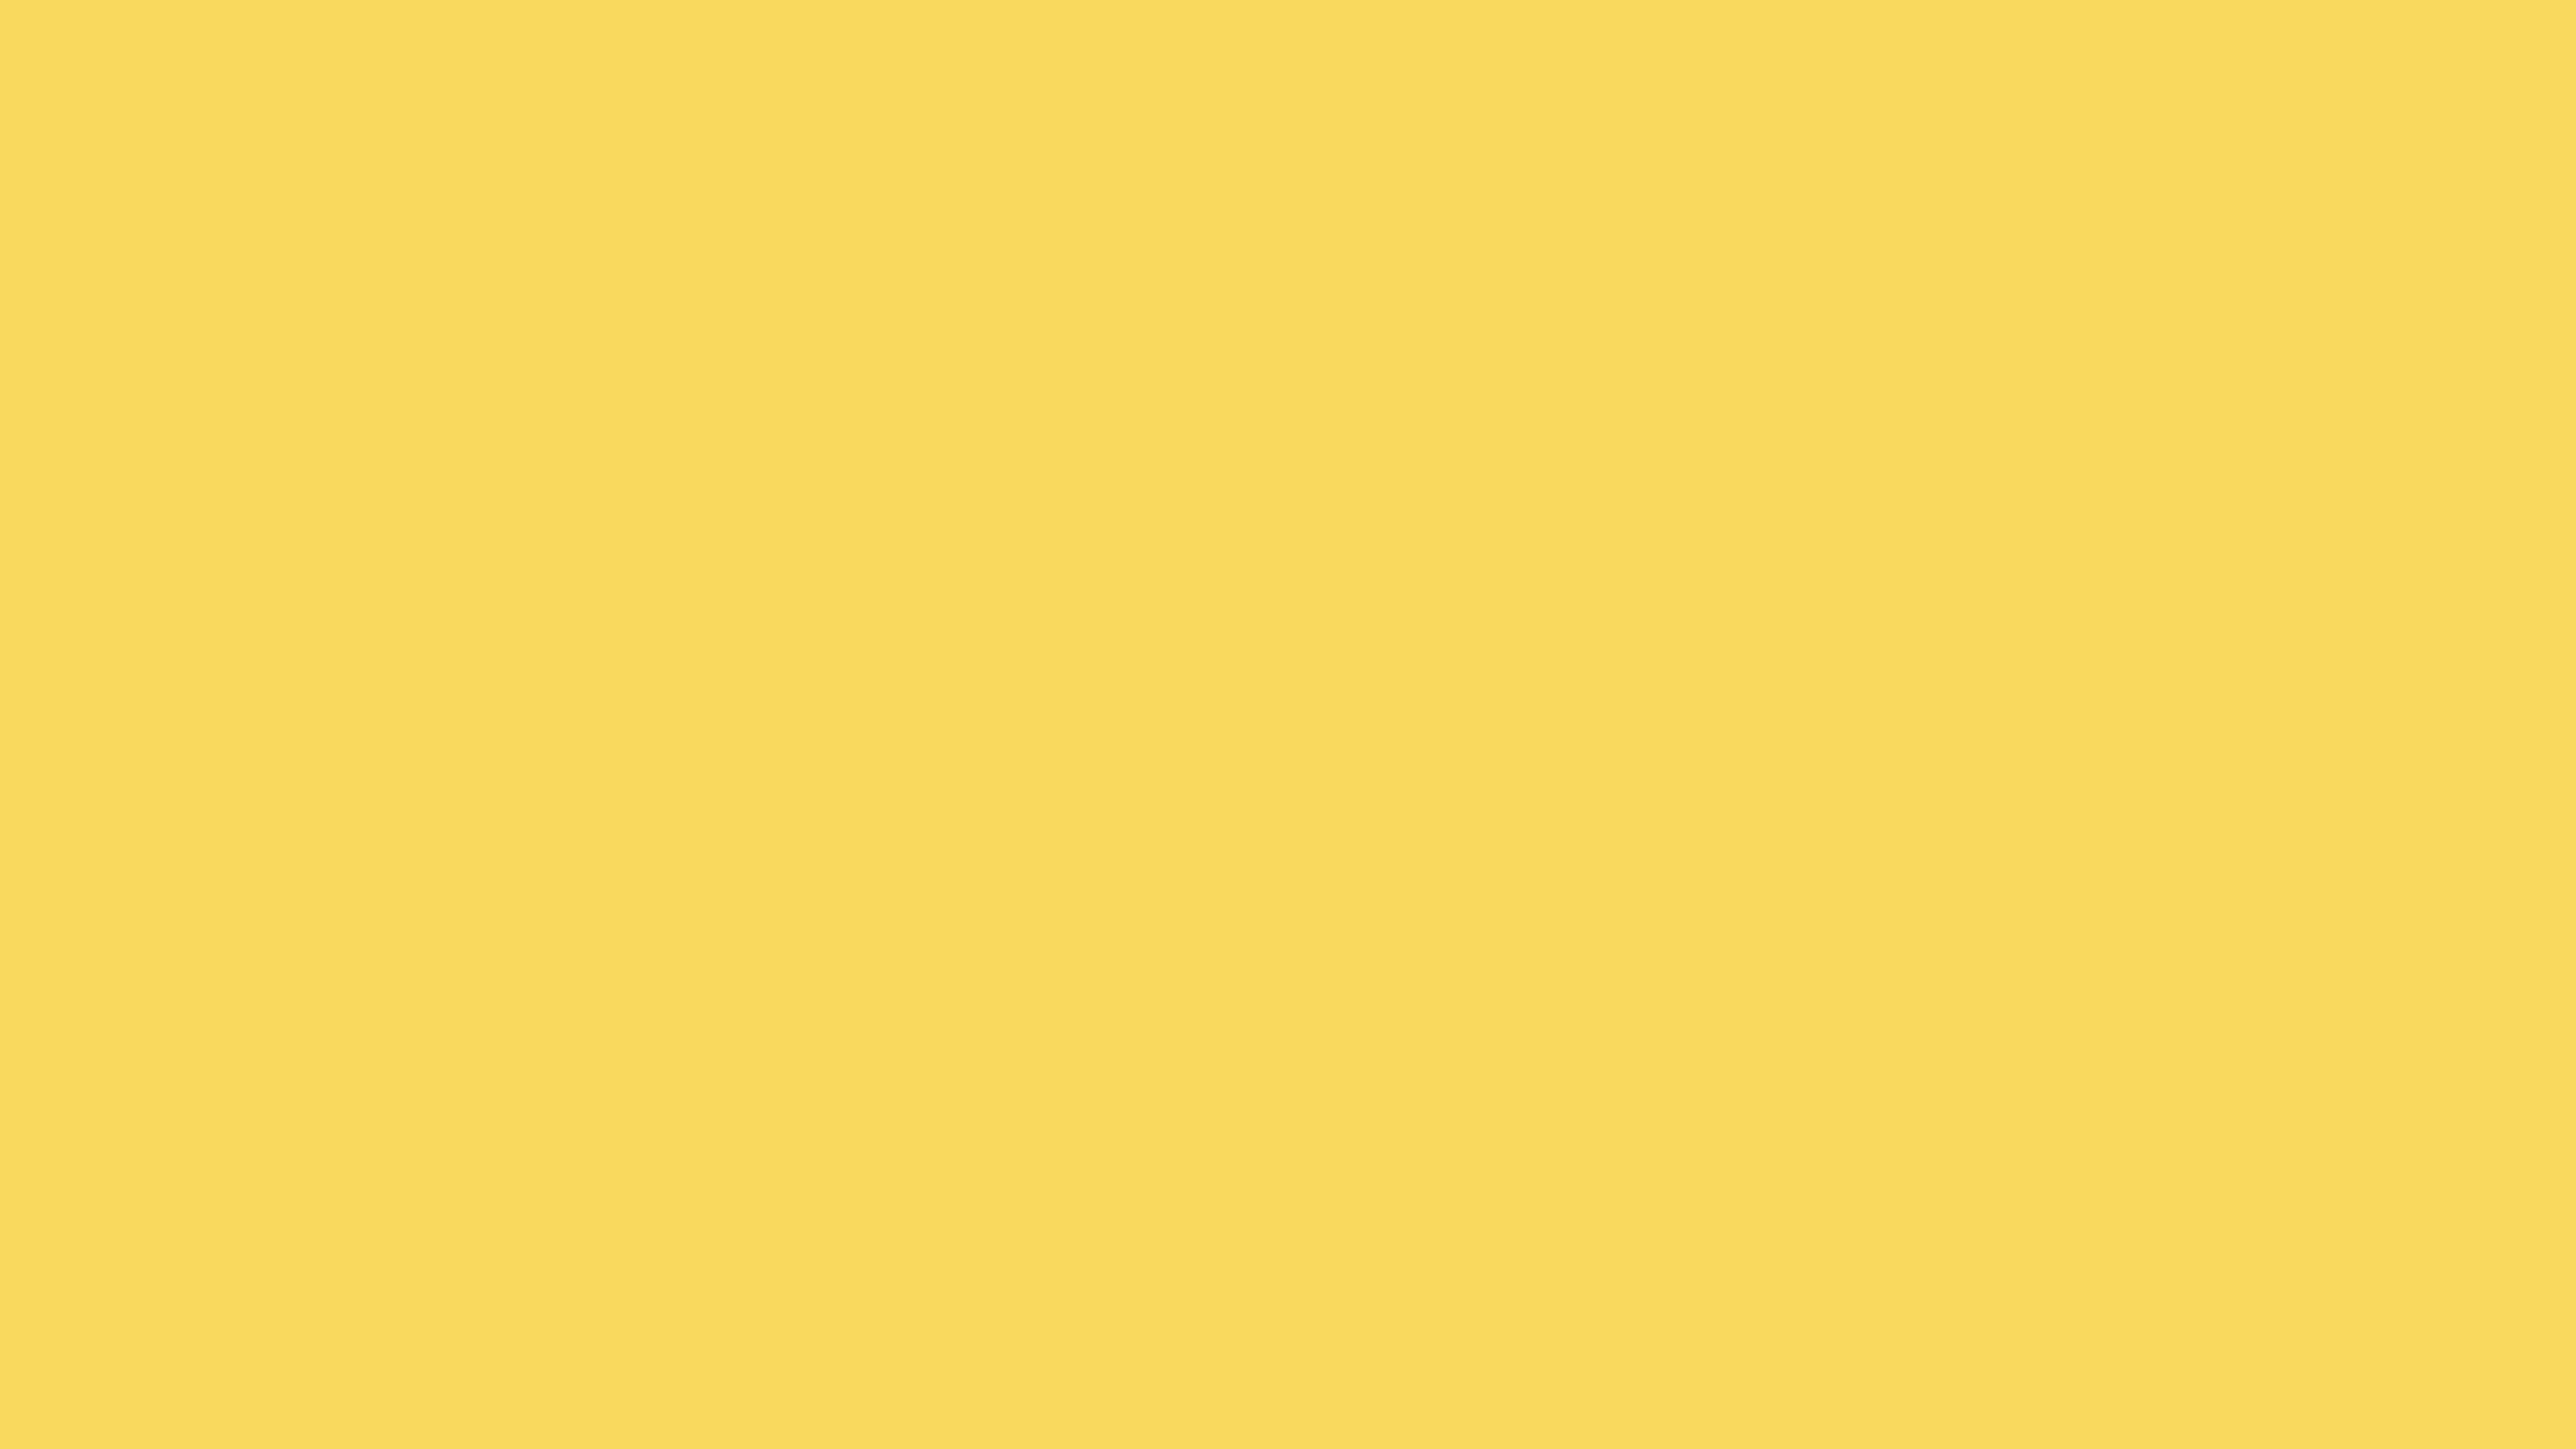 5120x2880 Stil De Grain Yellow Solid Color Background